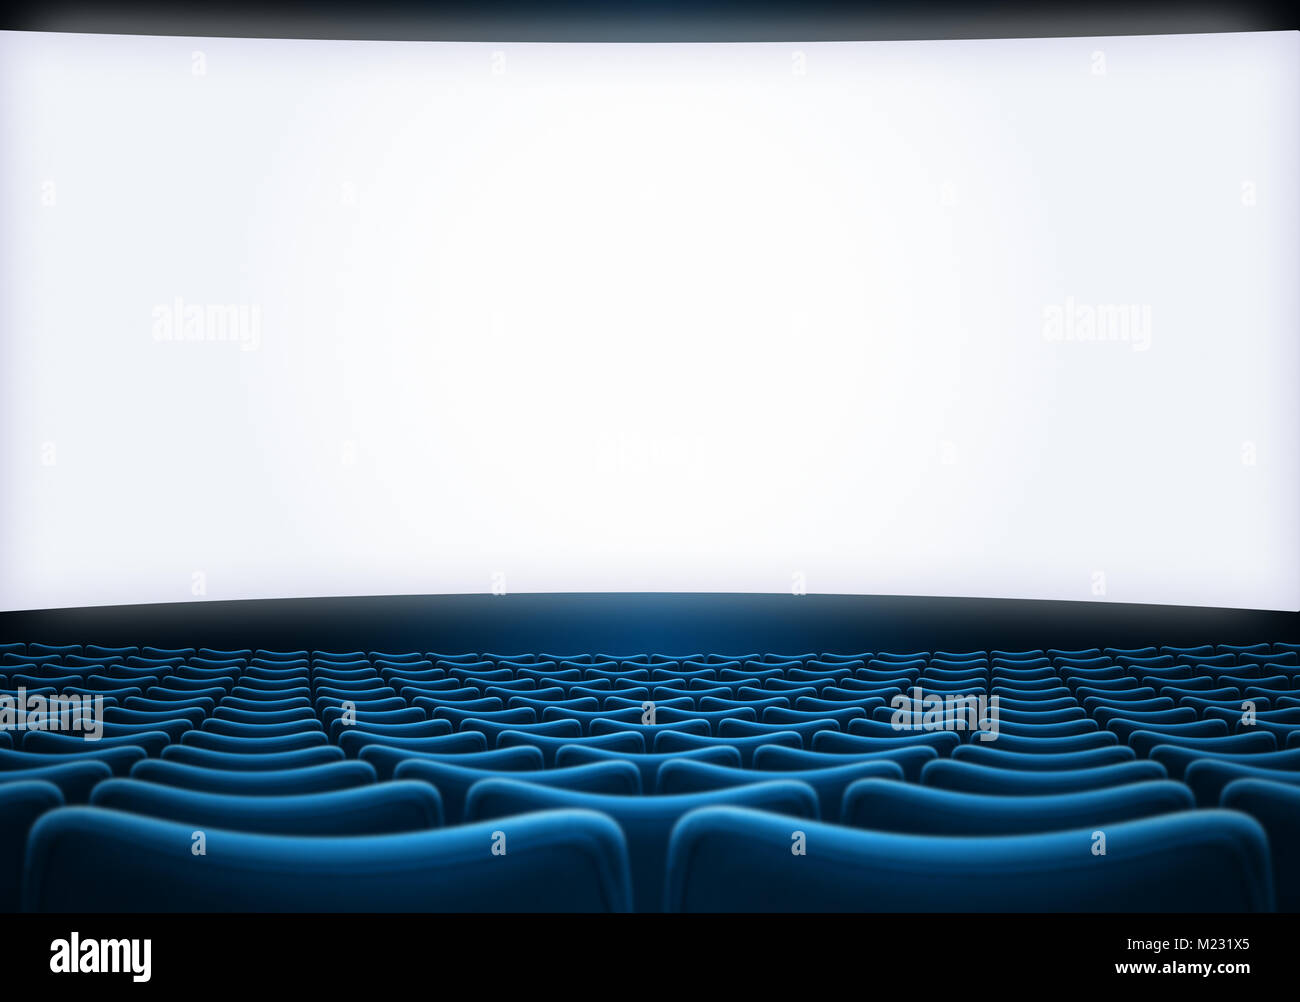 Écran de cinéma avec sièges bleu backrgound théâtre 3d illustration Banque D'Images